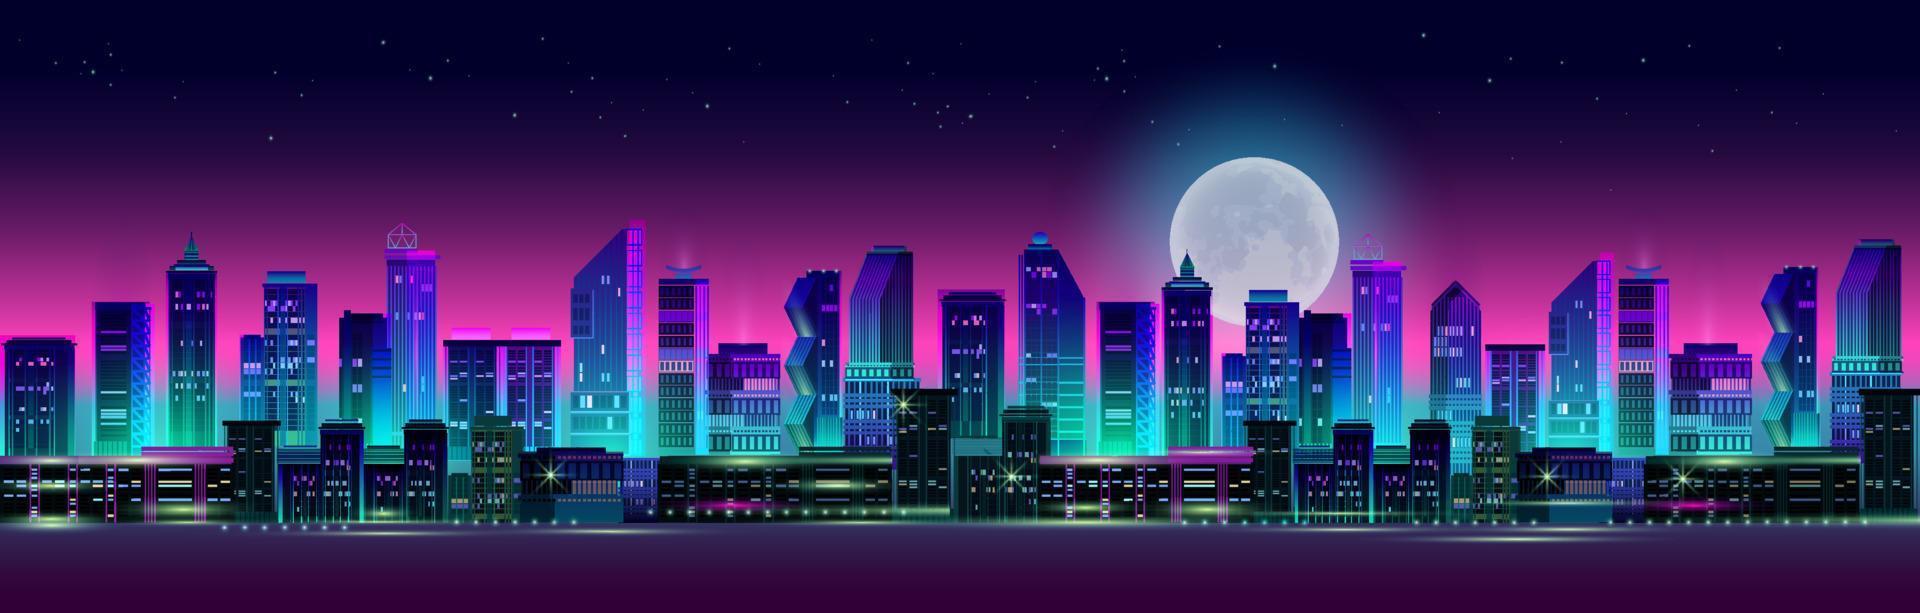 panorama nocturne de la ville avec néon sur fond sombre. vecteur. vecteur